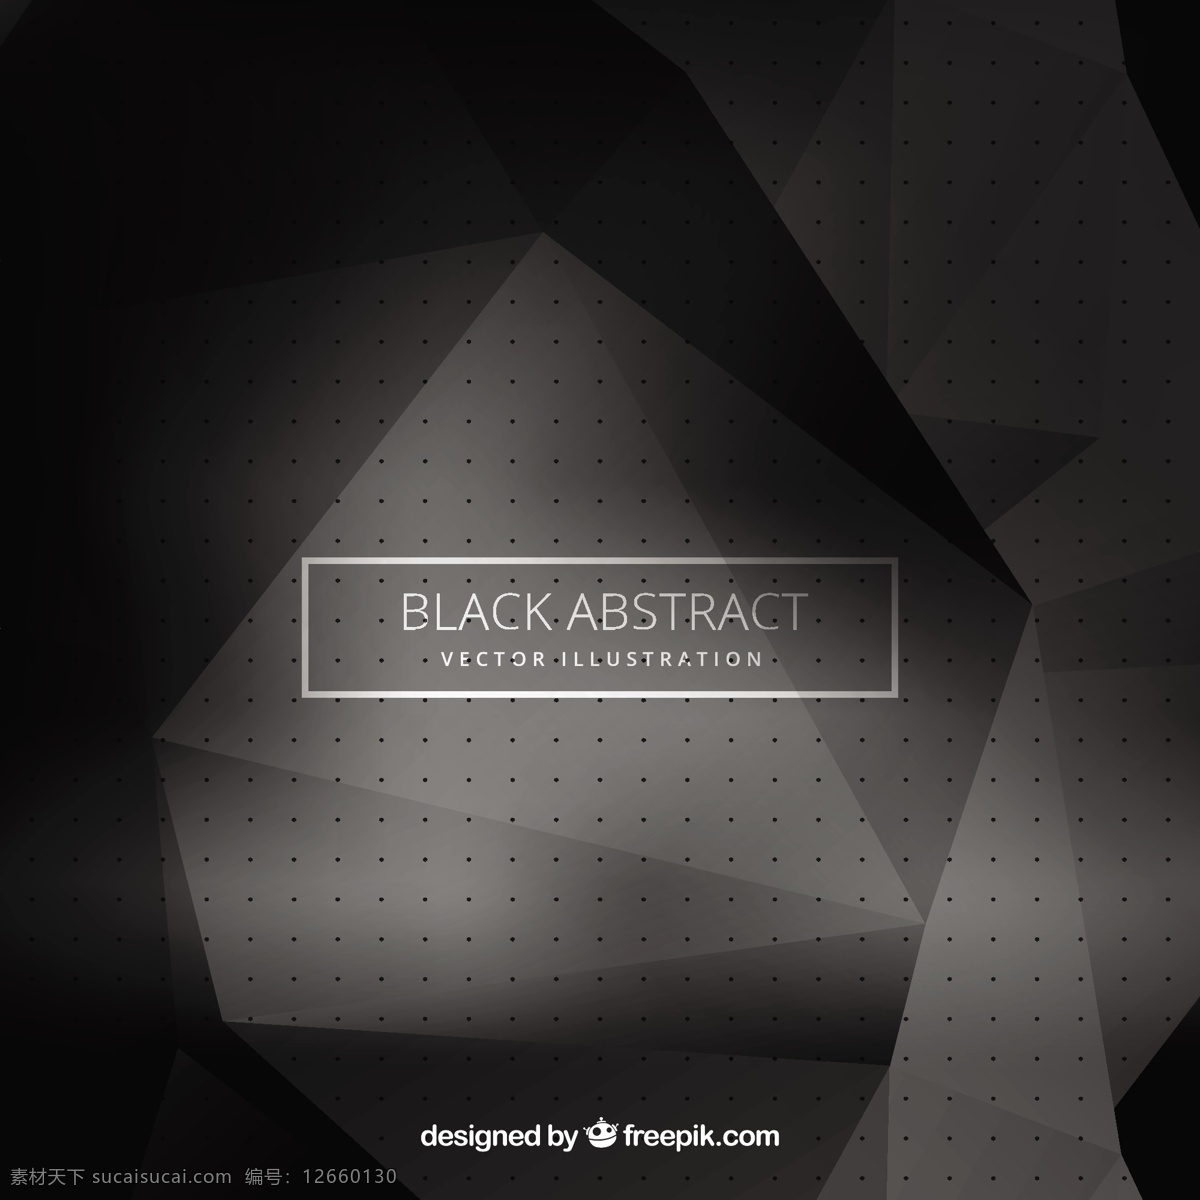 中文摘要背景 背景 抽象背景 抽象 几何 黑色背景 黑色 几何背景 多边形 暗 暗背景 背景黑色 色调